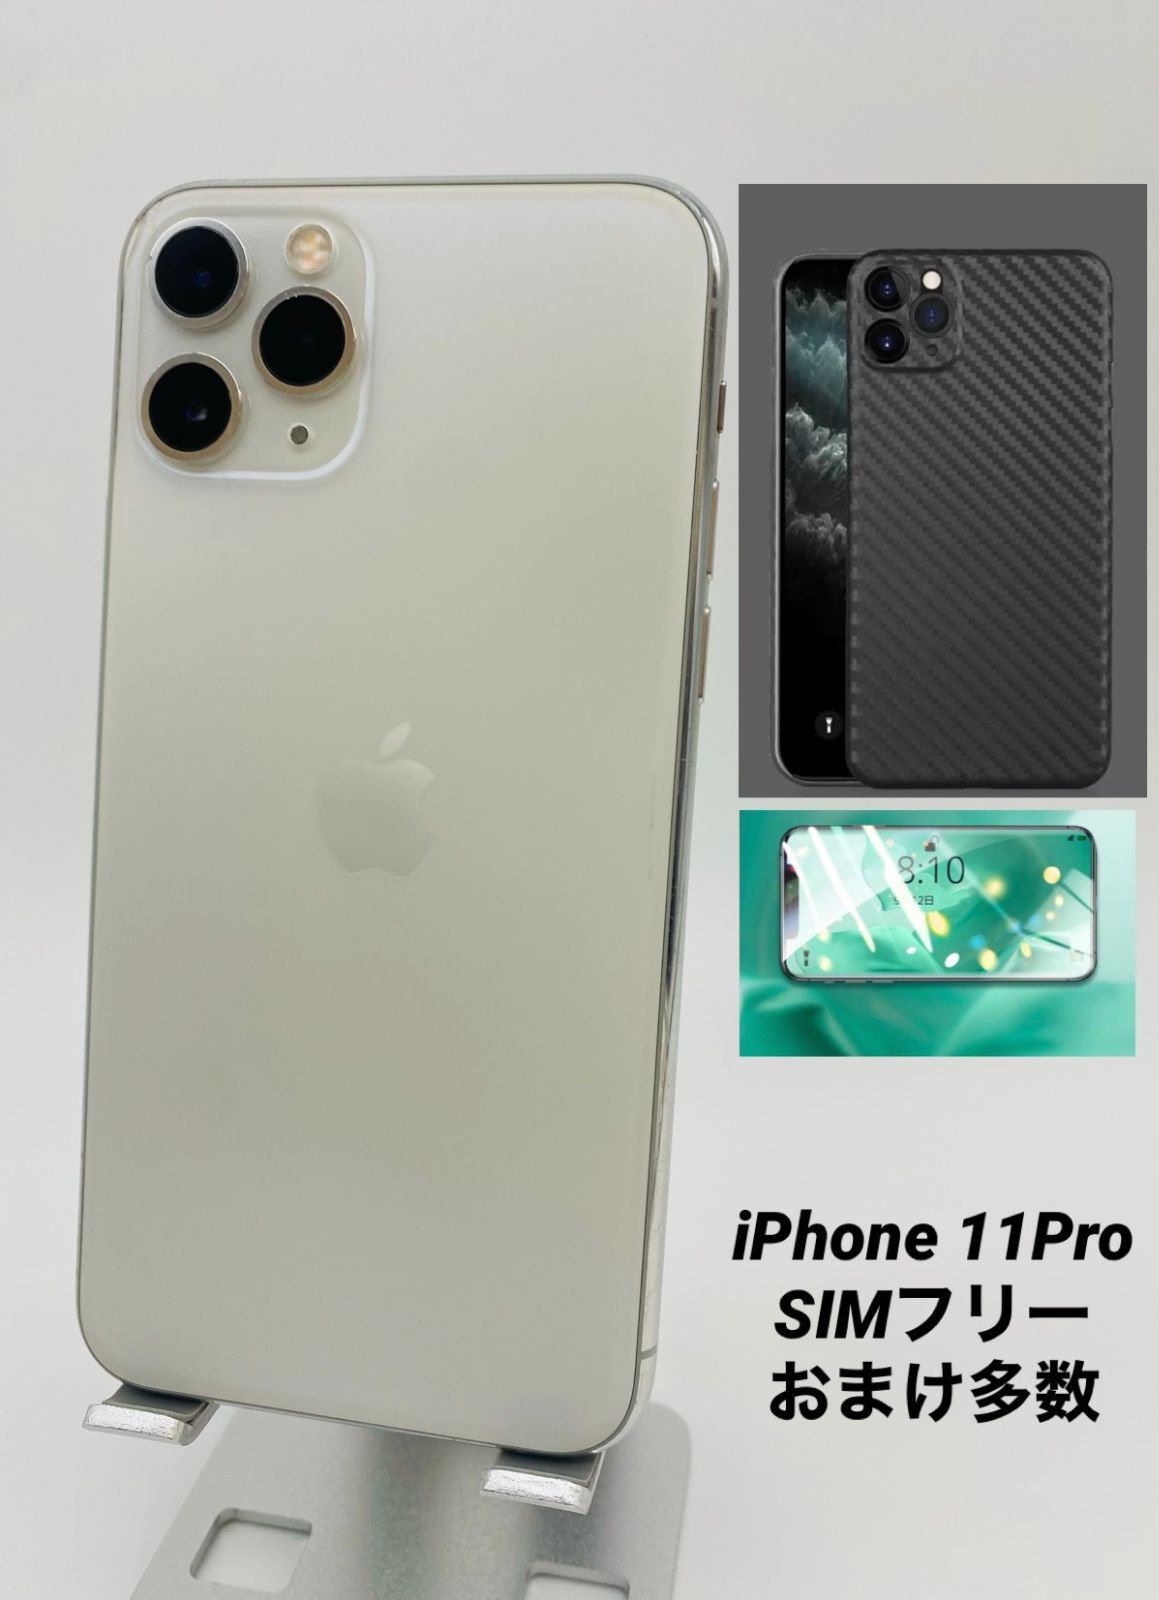 iPhone11pro シルバー 64GB - 携帯電話本体